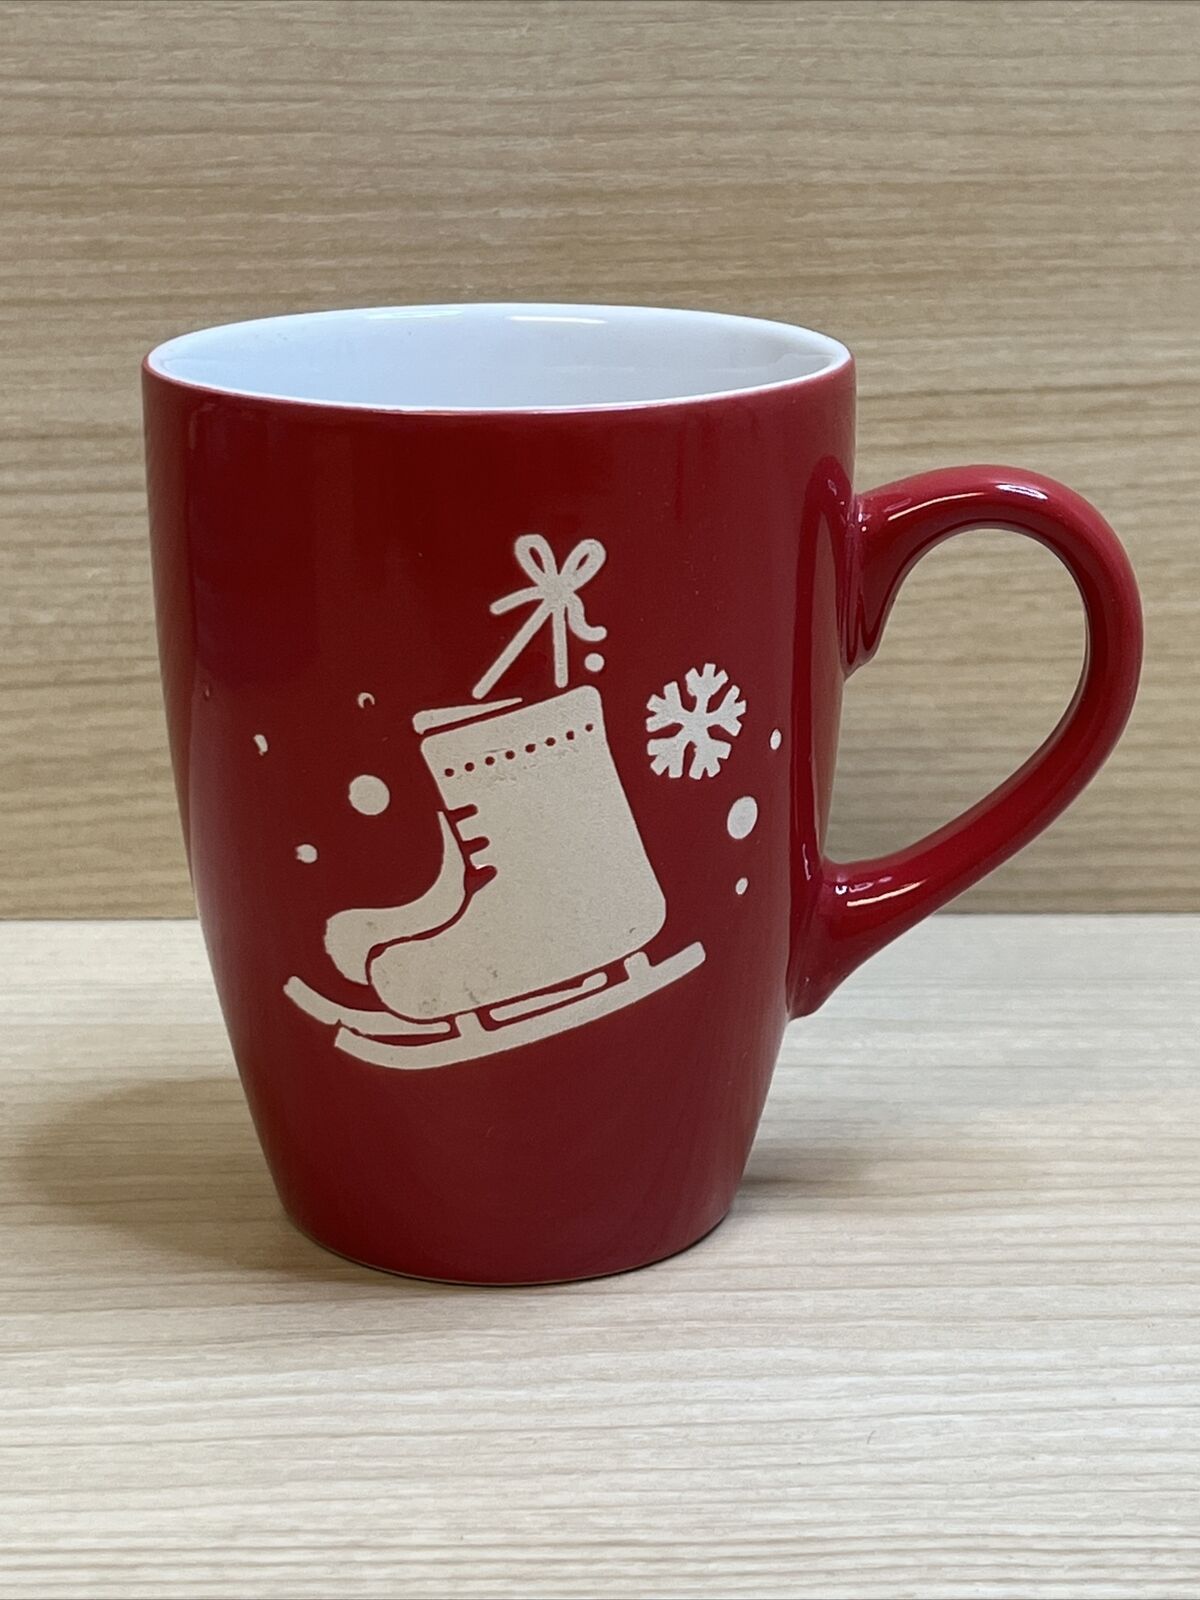 California Pantry Winter Christmas Coffee Mug Cup Red White Ice Skate Snow